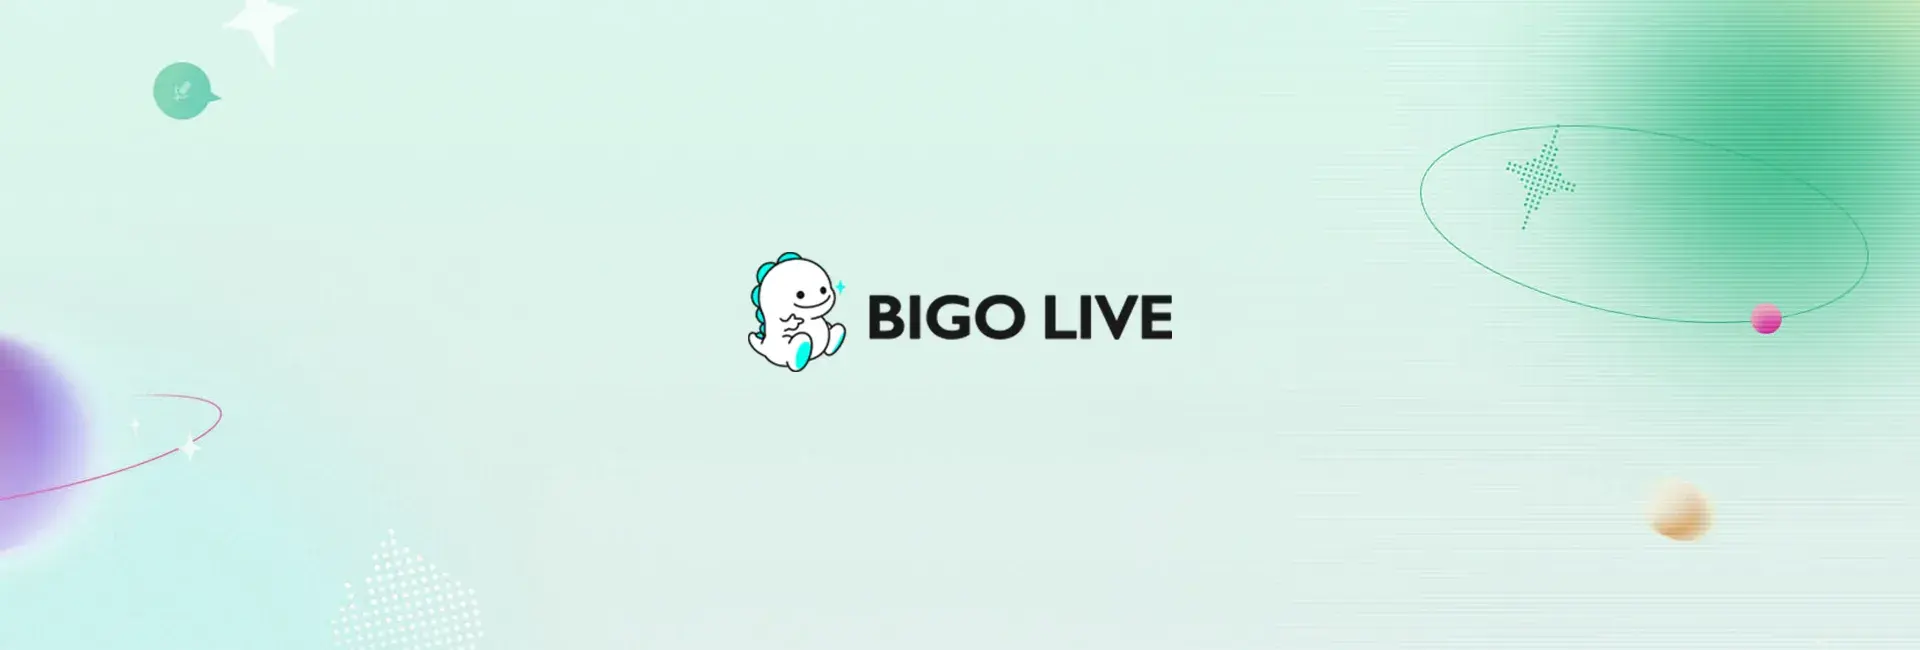 Bigo Live - 1050 Diamonds (Global)